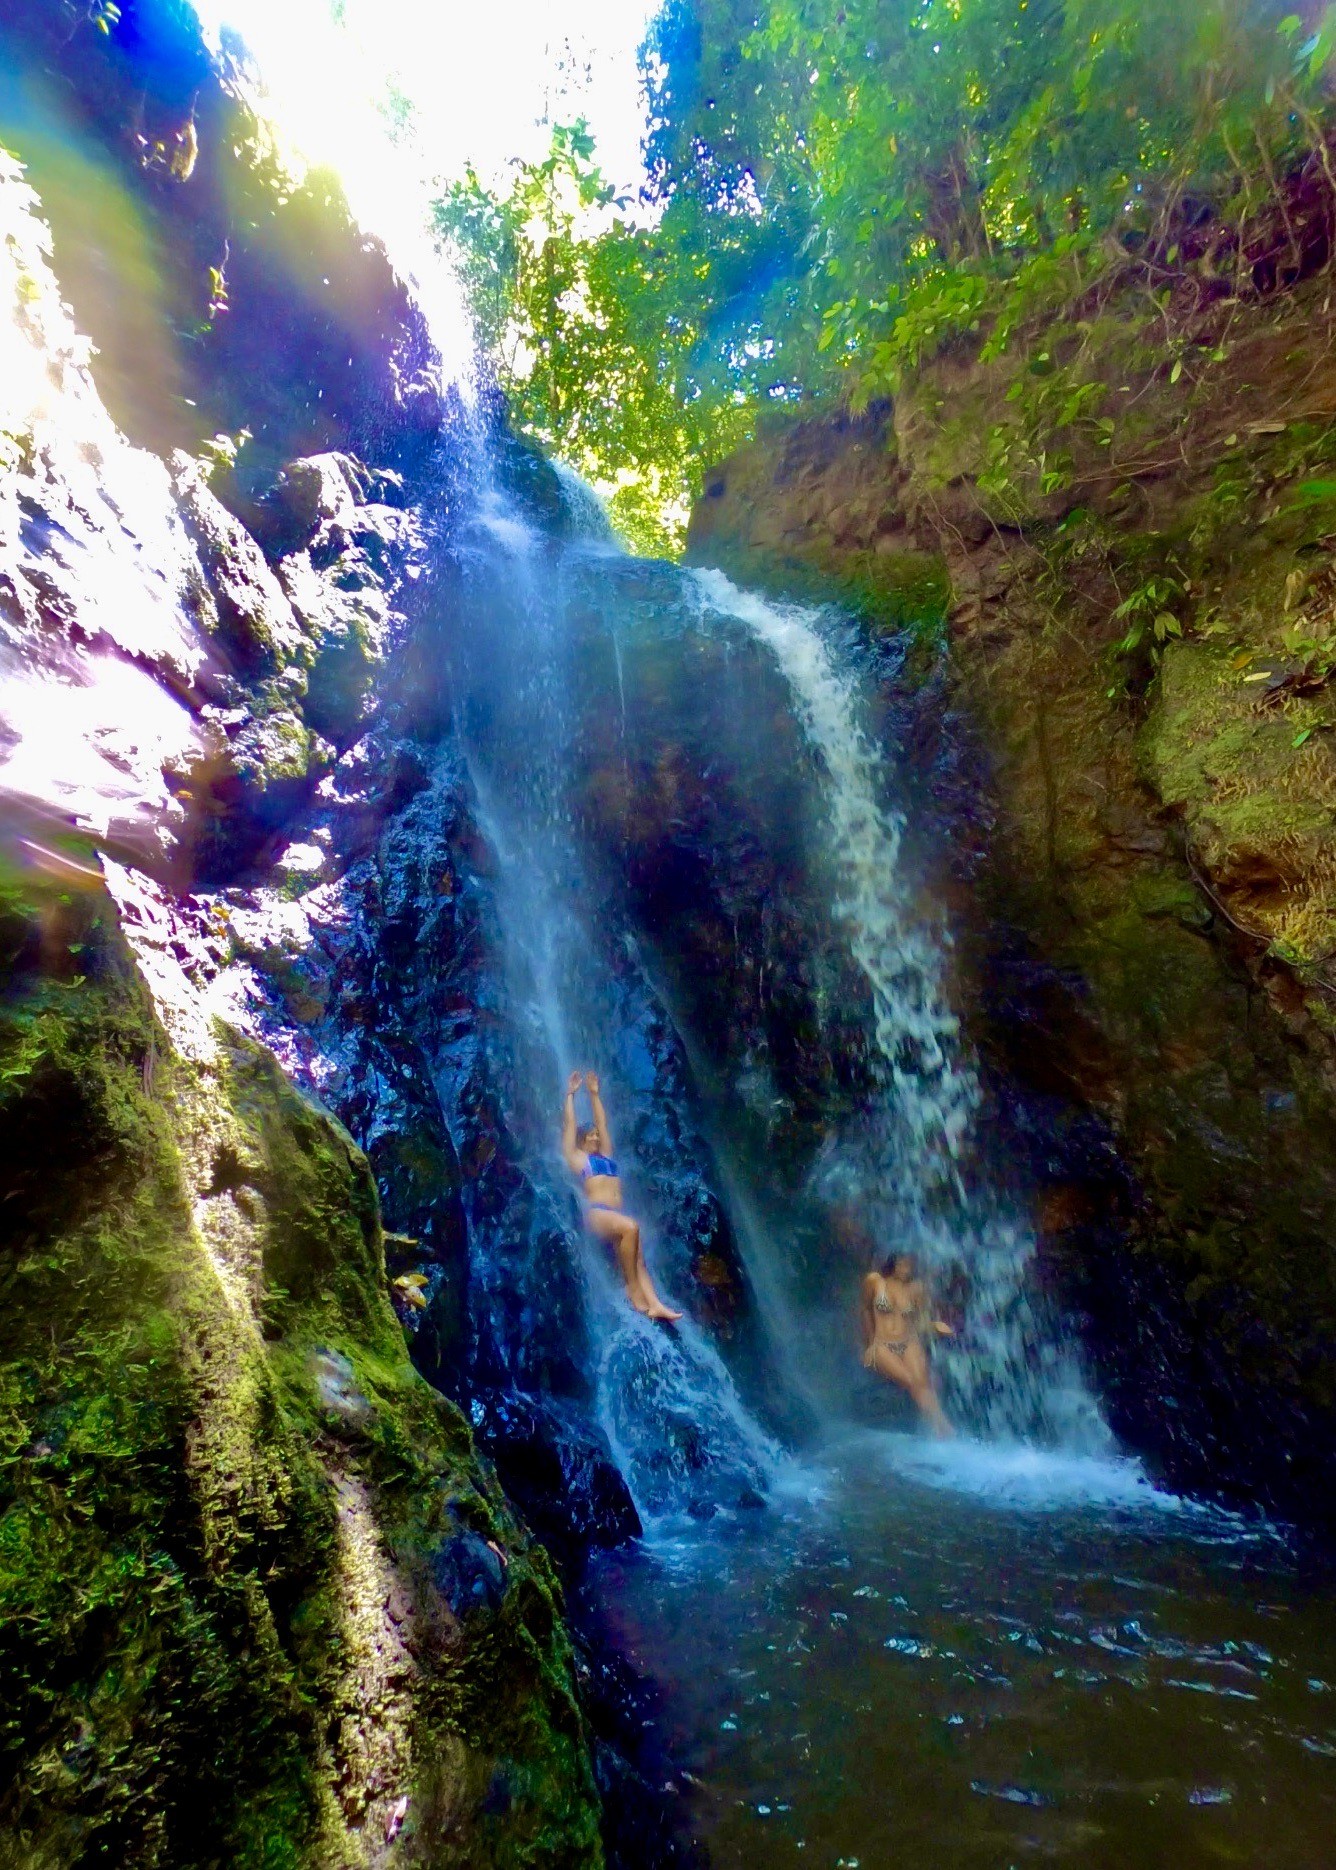 Osa Peninsula Mogos Waterfalls